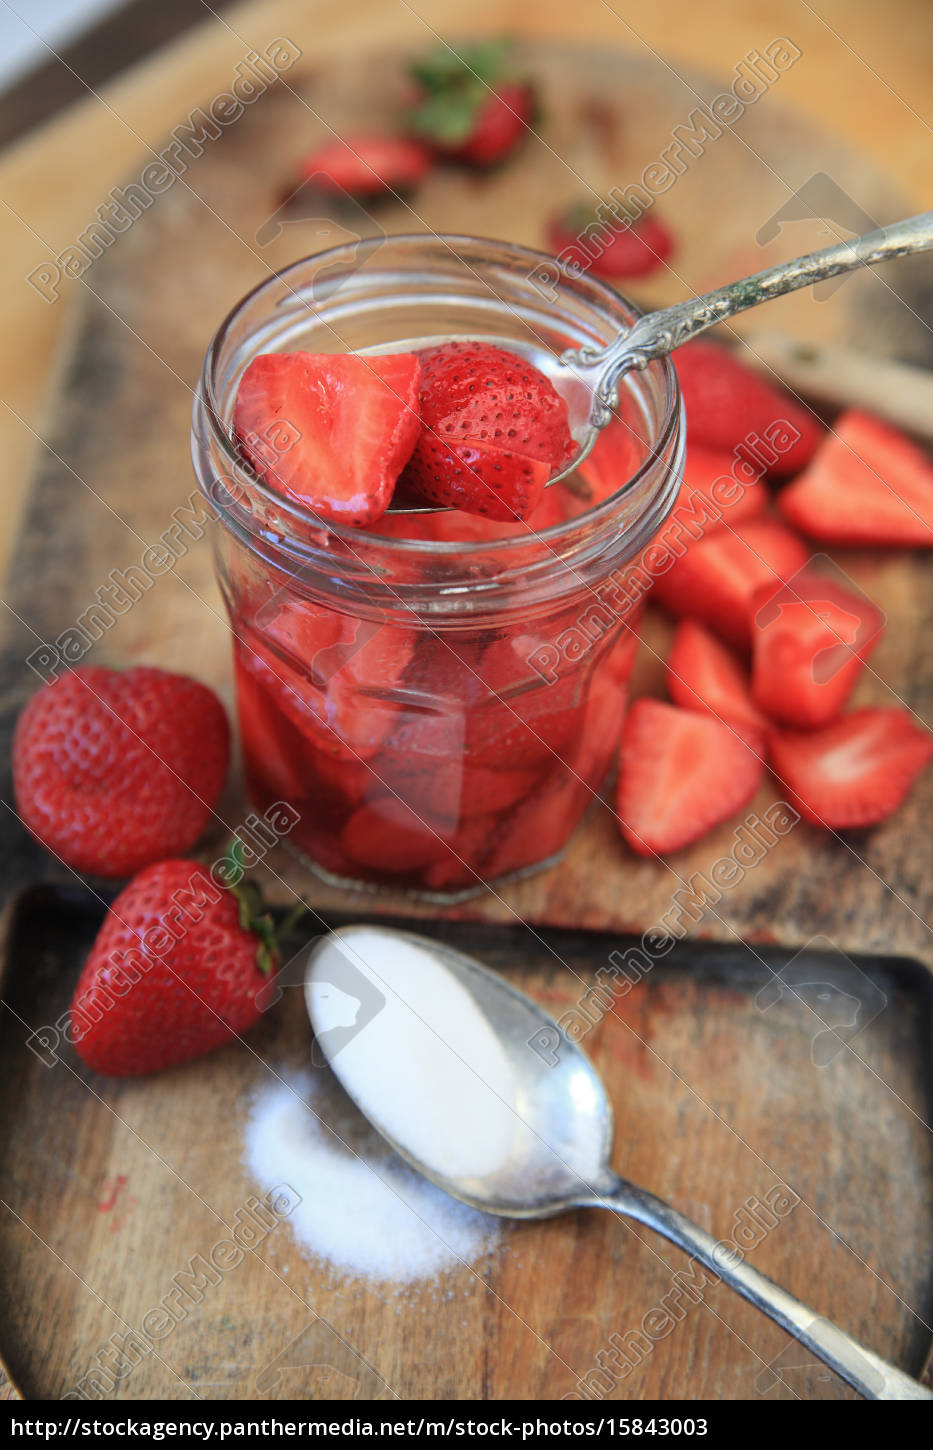 gezuckerte erdbeeren in einem glas - Stockfoto - #15843003 ...